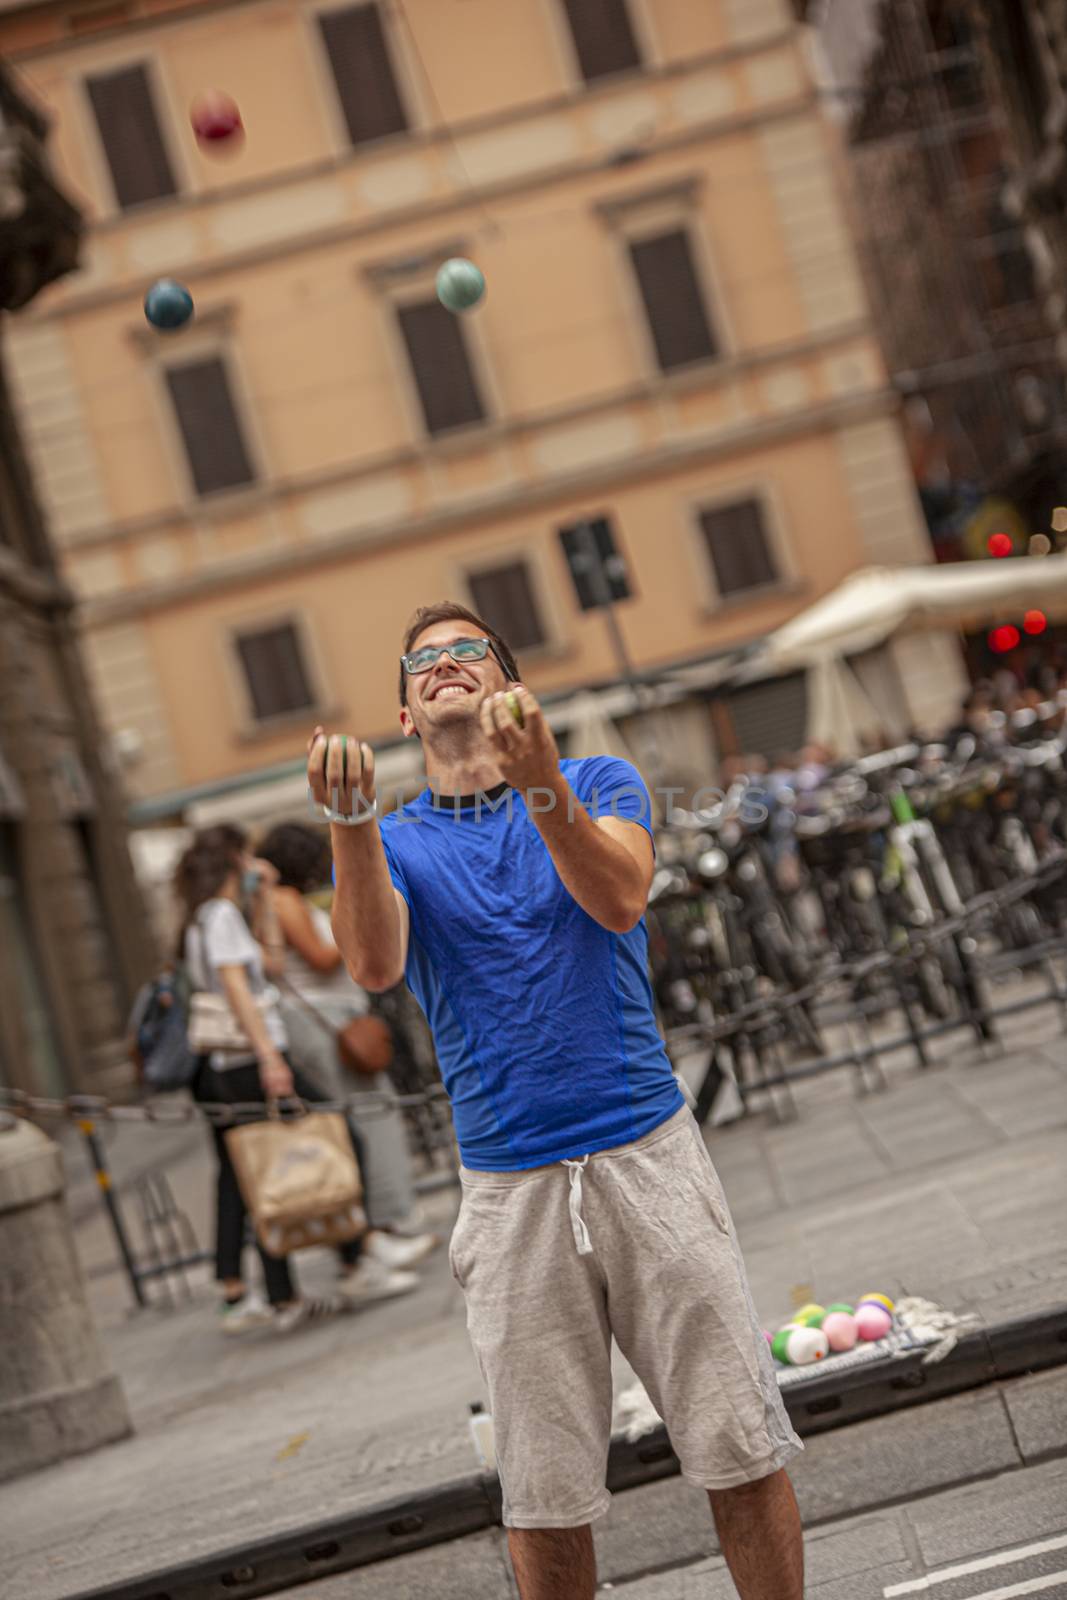 BOLOGNA, ITALY 17 JUNE 2020: Street artist juggler in Bologna, Italy